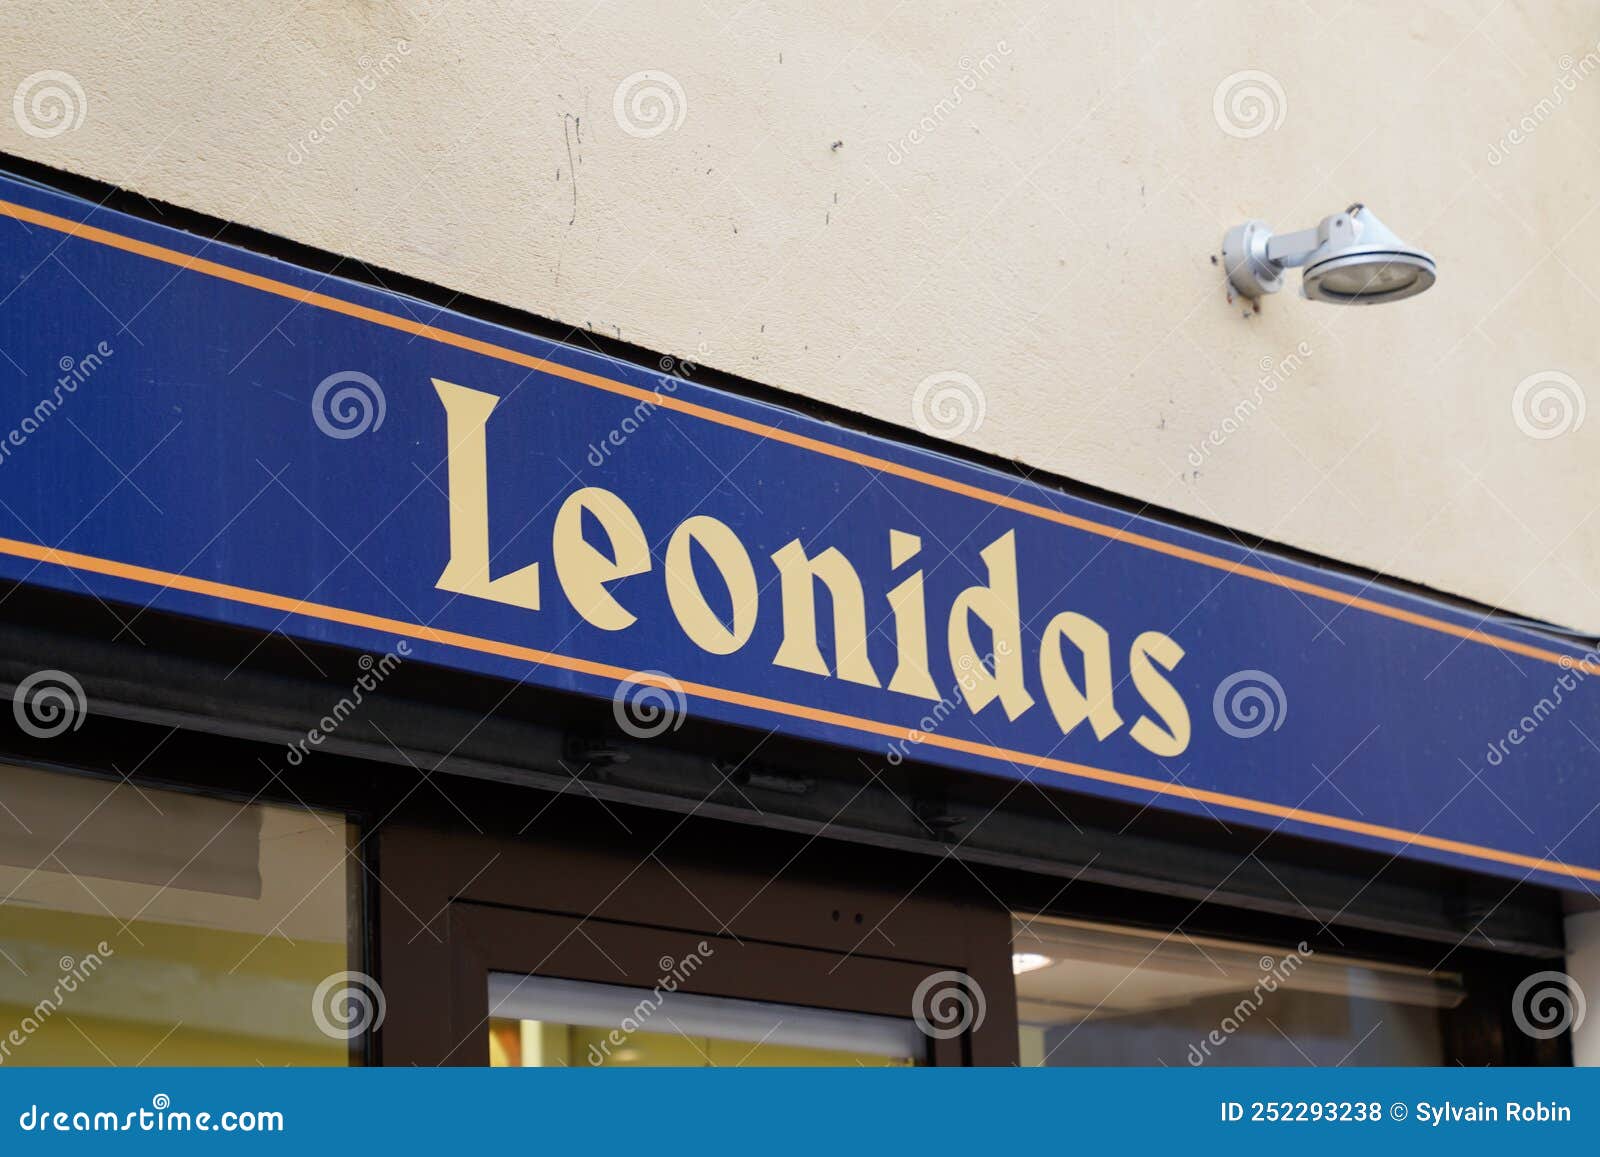 Confiserie leonidas : 49 images, photos de stock, objets 3D et images  vectorielles